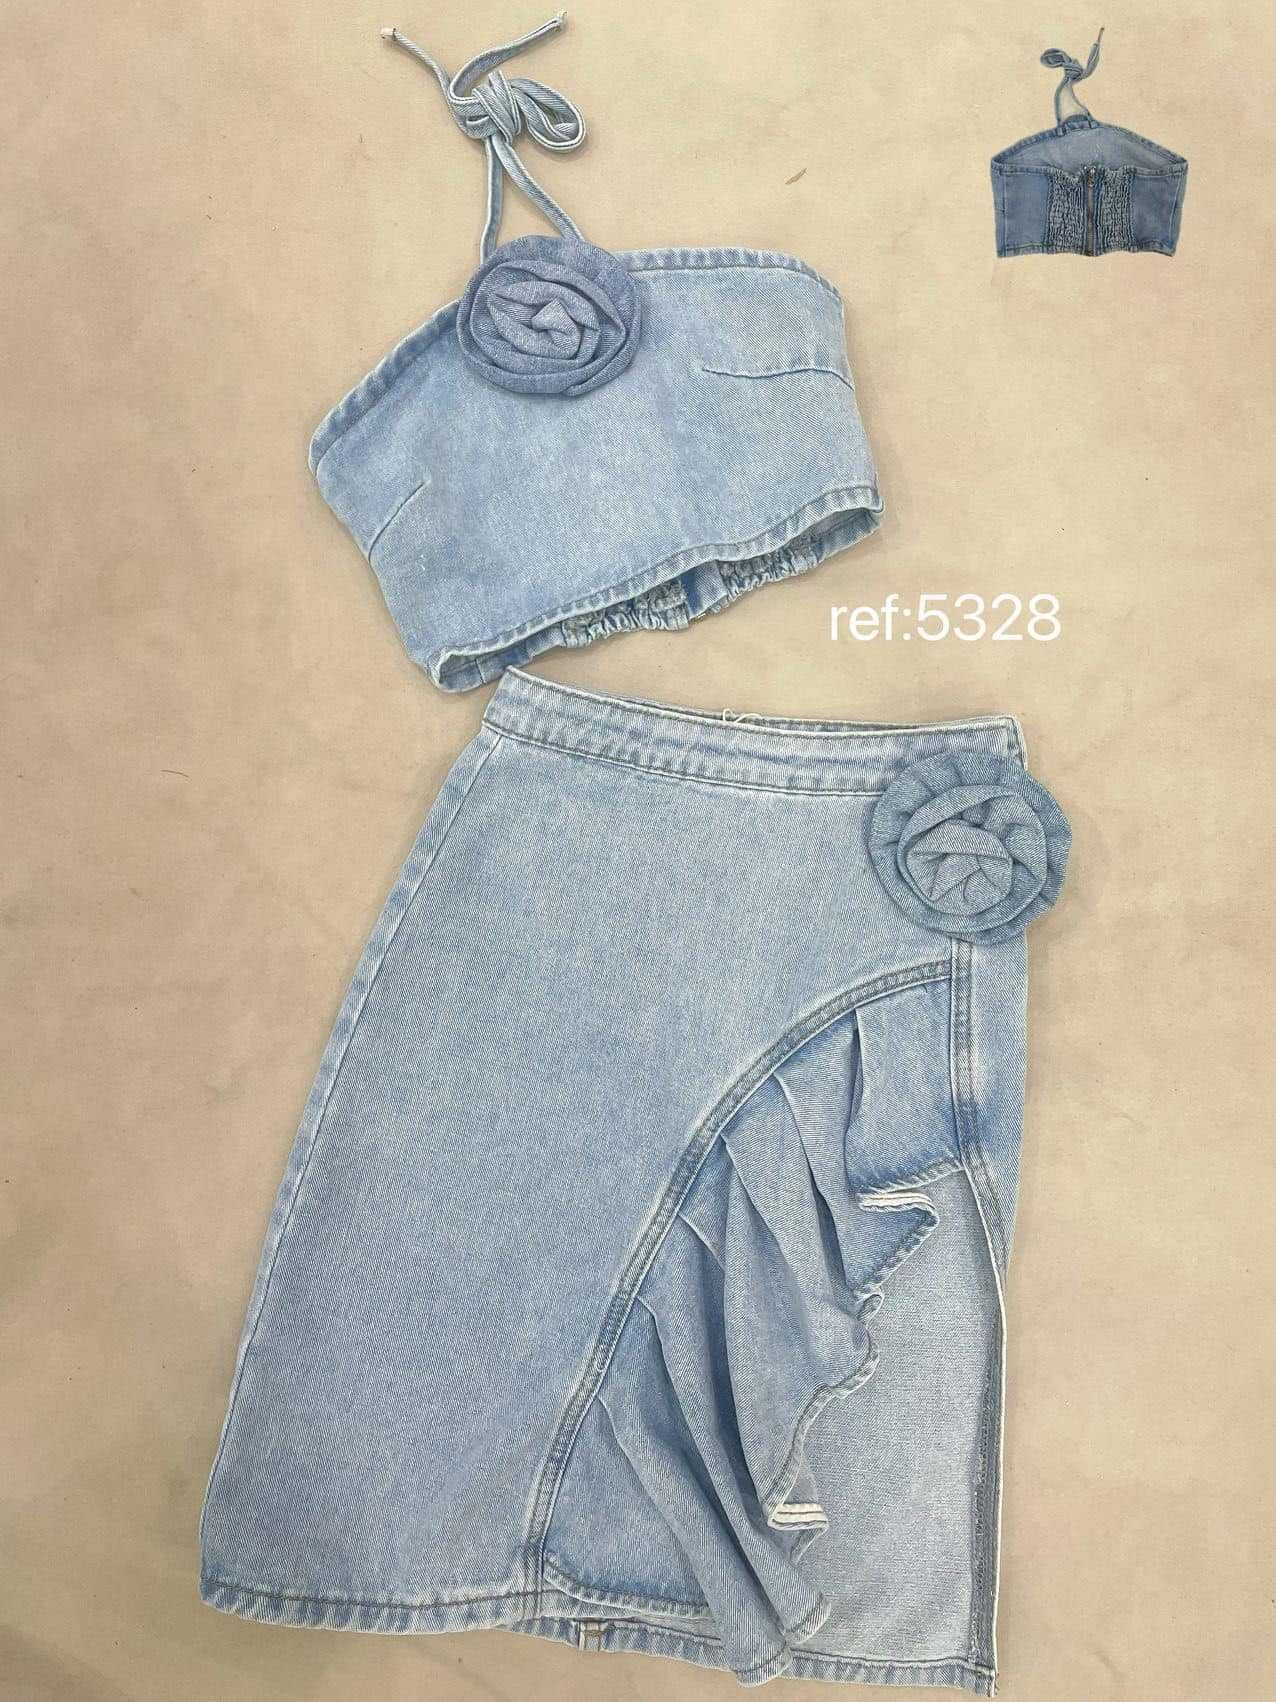 Zestaw dla dziewczynki komplet jeansowy top i spódnica z różą 98-104